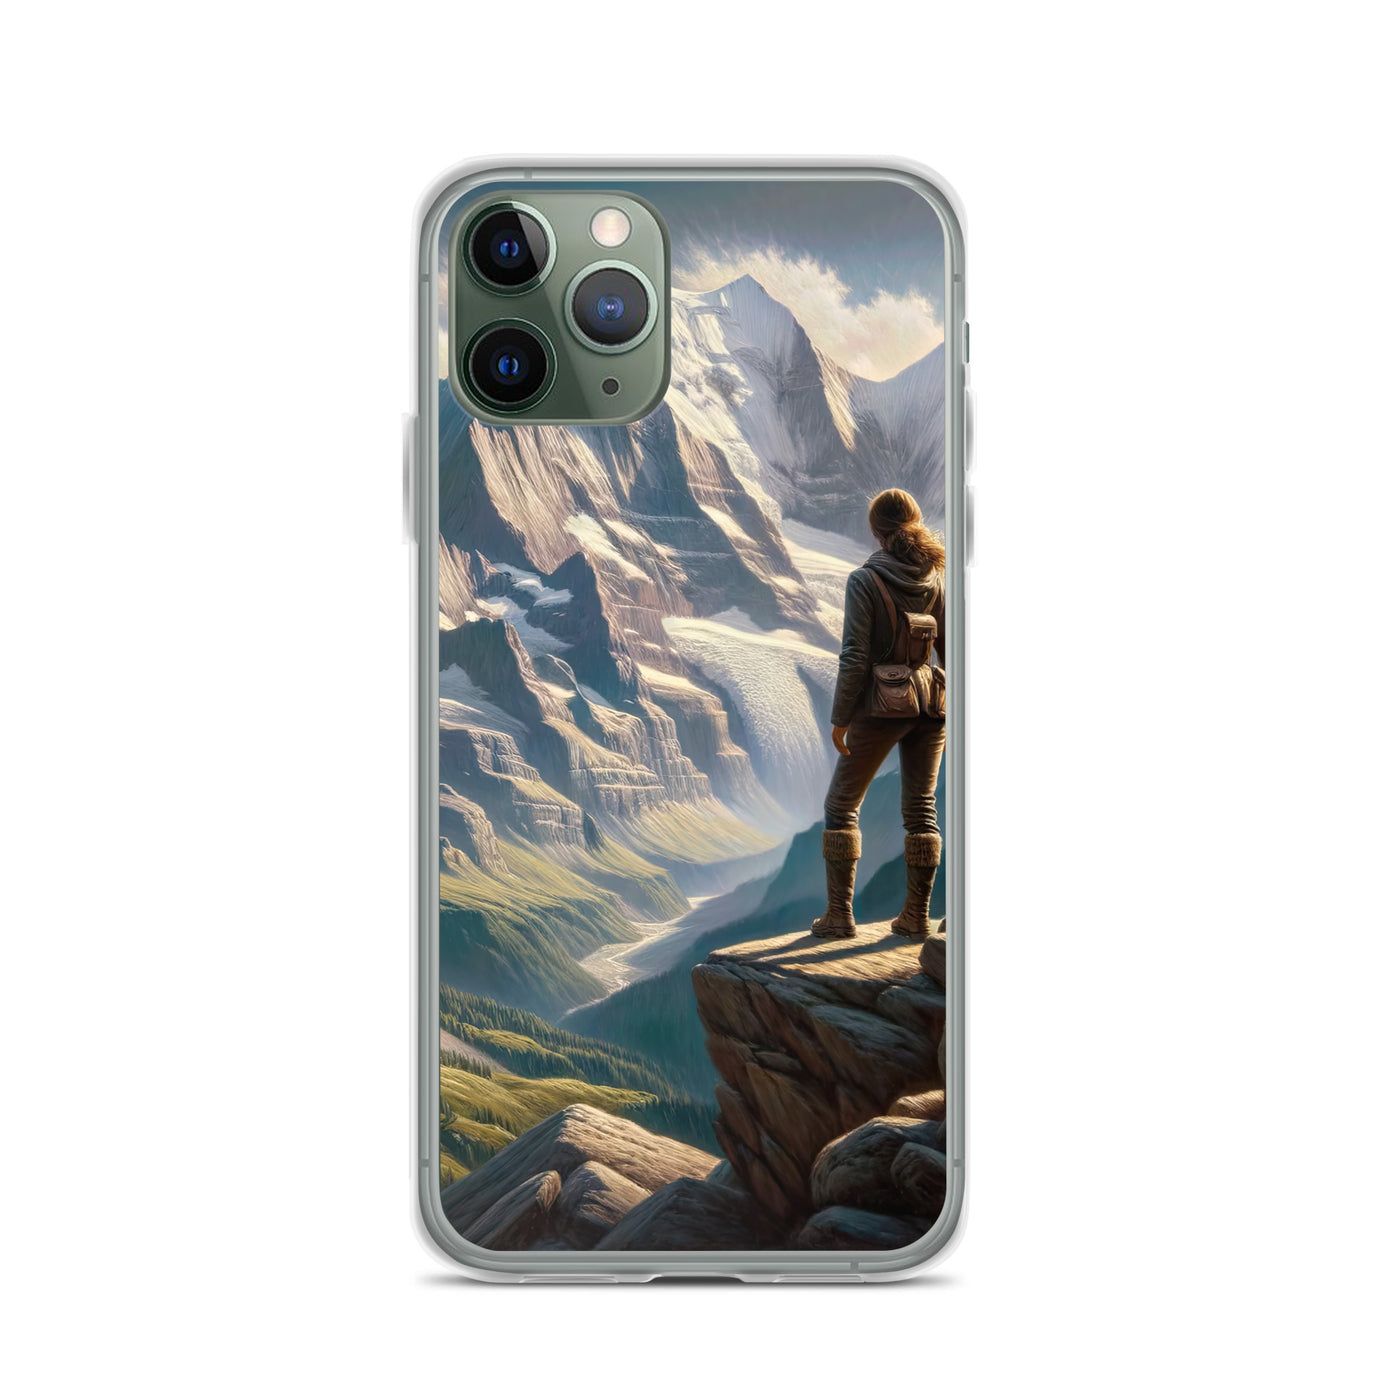 Ölgemälde der Alpengipfel mit Schweizer Abenteurerin auf Felsvorsprung - iPhone Schutzhülle (durchsichtig) wandern xxx yyy zzz iPhone 11 Pro